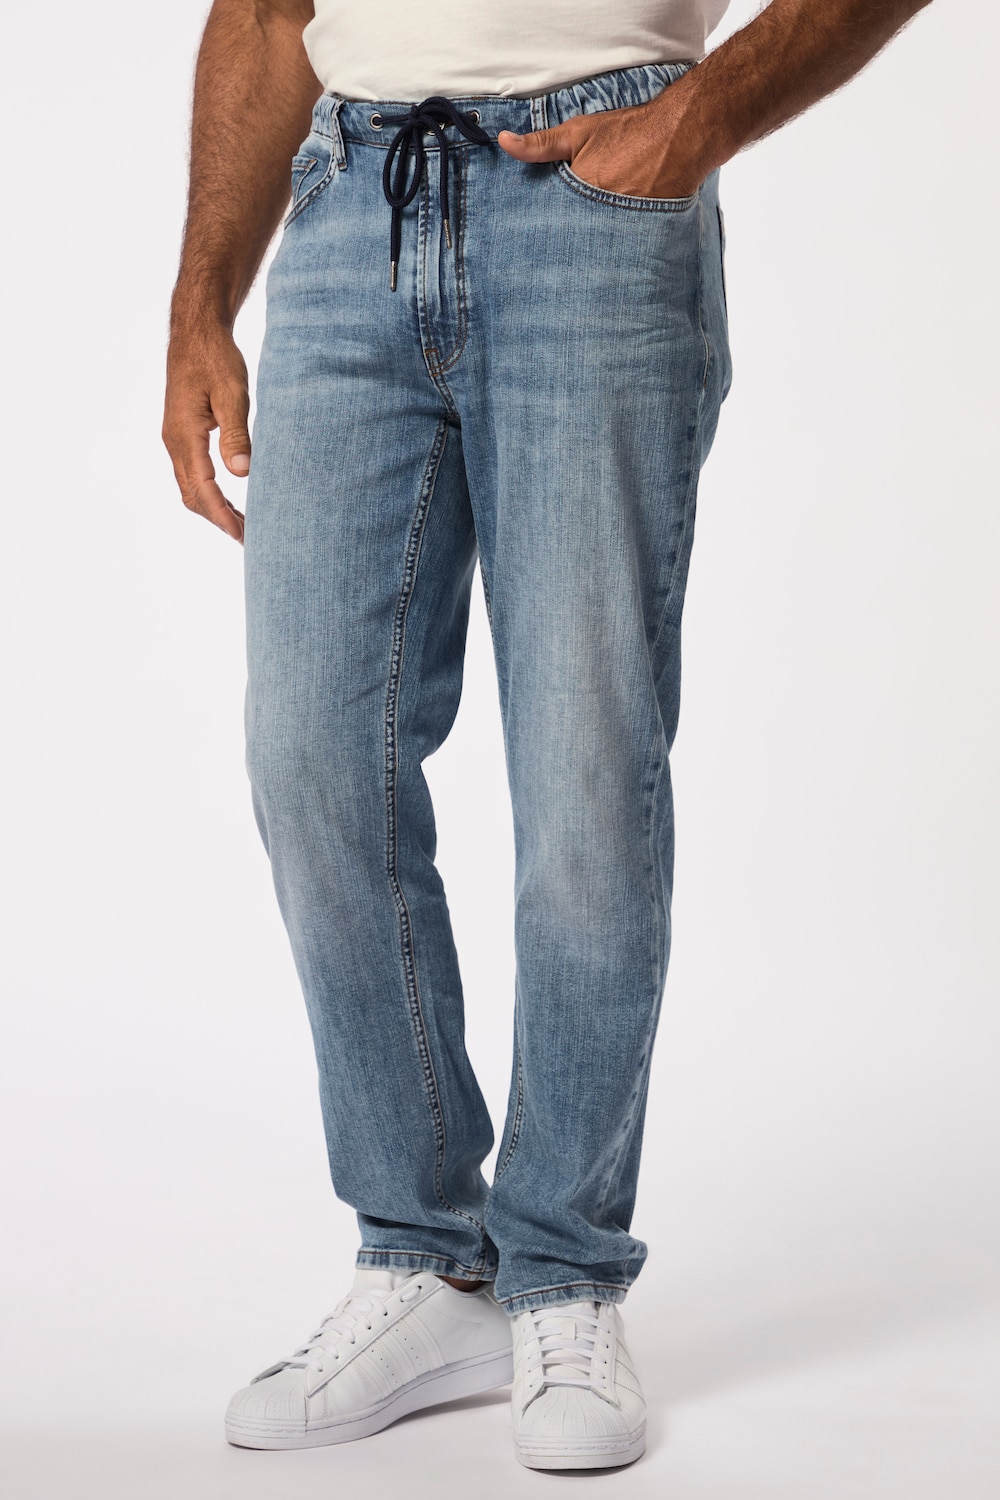 Grote Maten JP1880 Jeans, Heren, blauw, Maat: L, Katoen/Polyester, JP1880